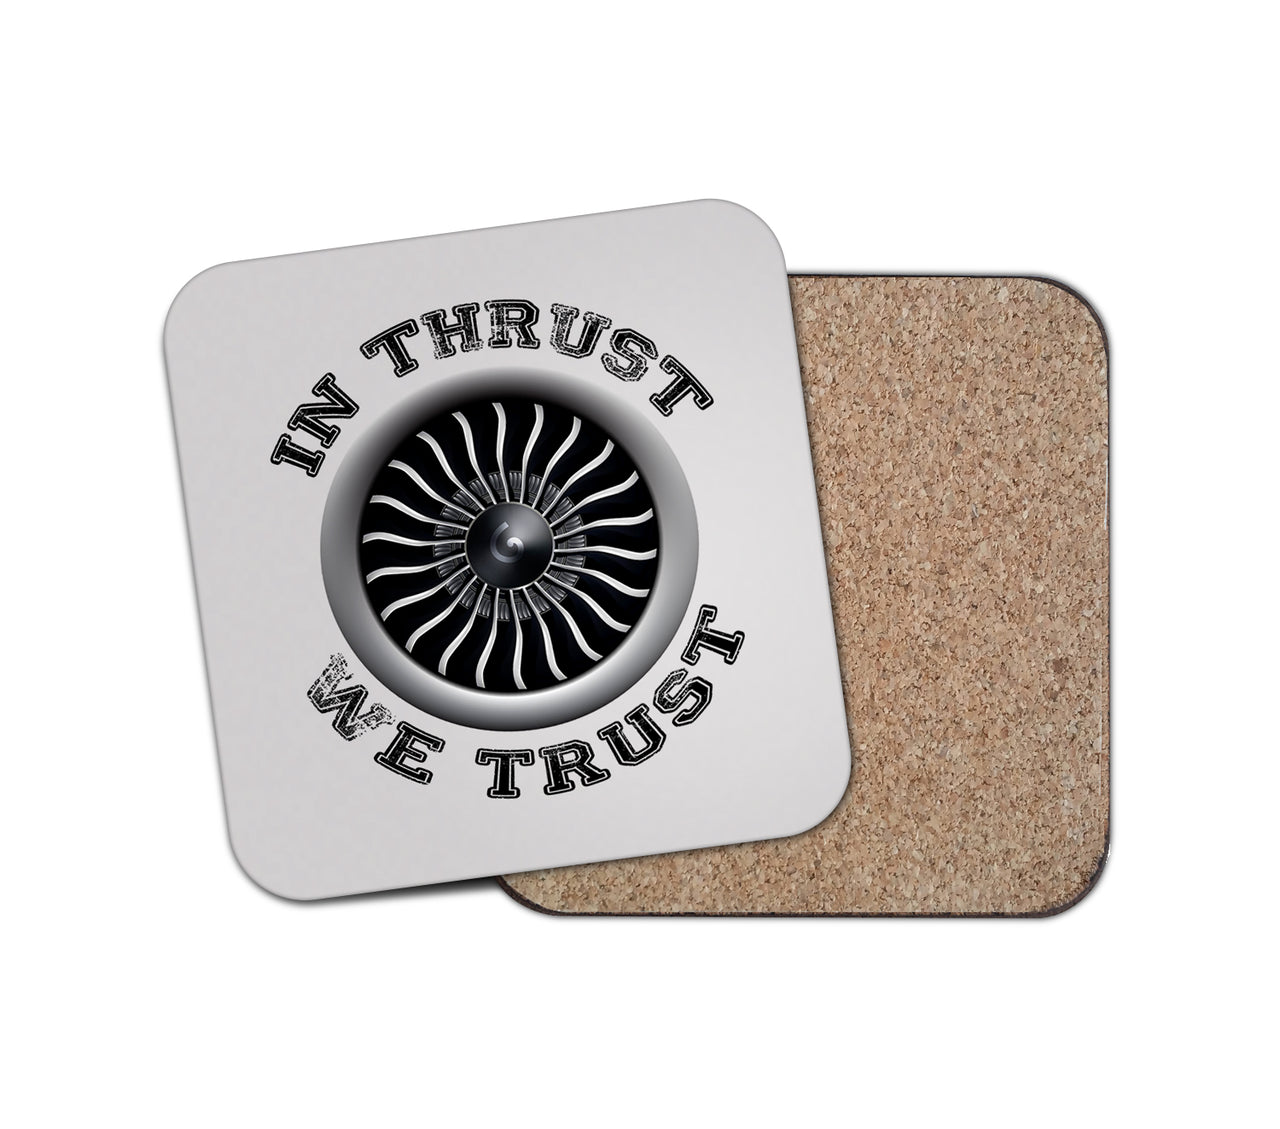 In Thrust We Trust (Vol 2) Designed Coasters